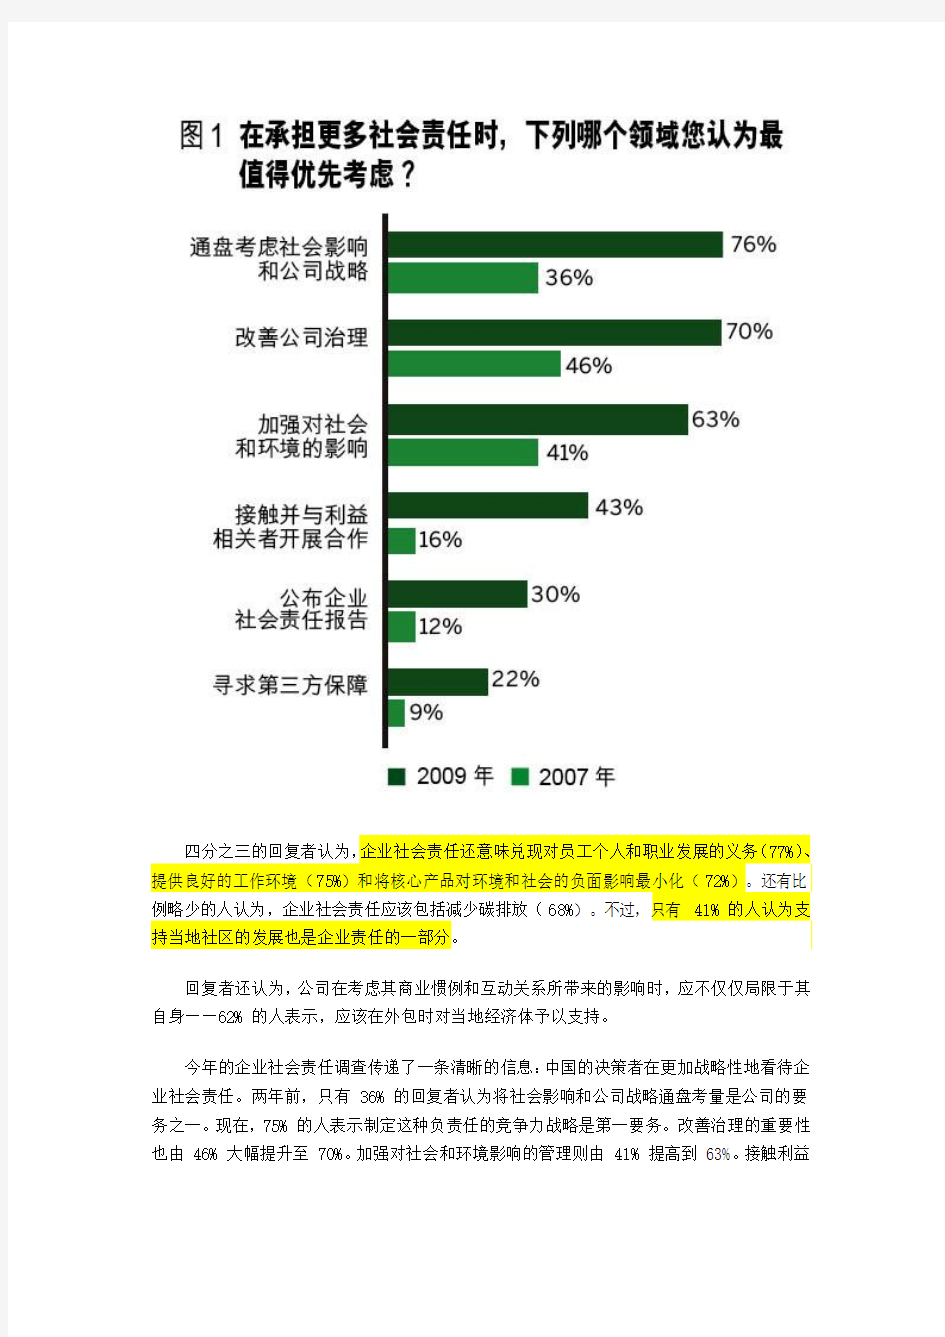 《财富》2009中国企业责任调查